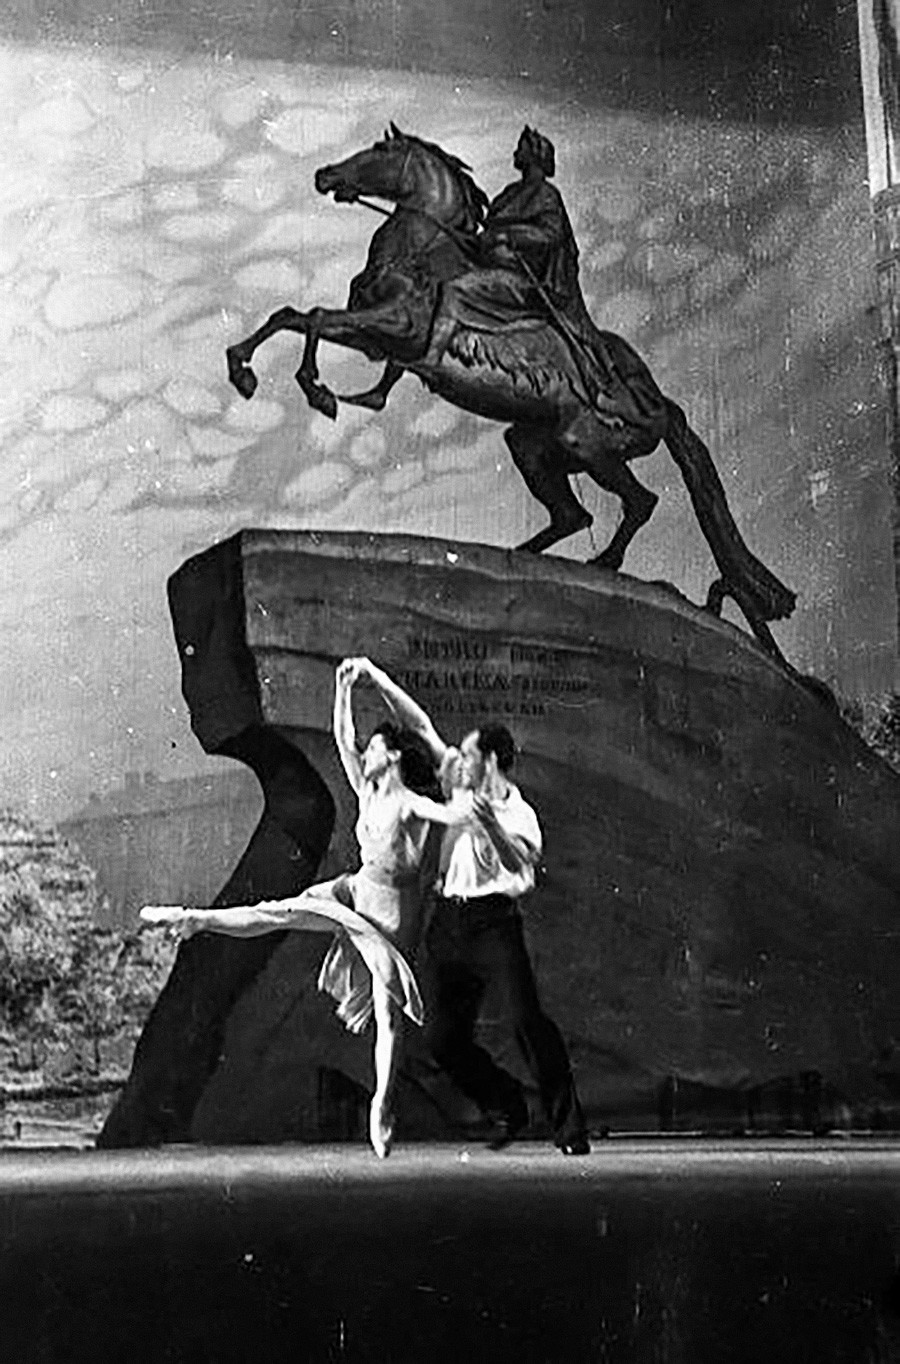 ボリショイ劇場で上演されたレイノルド・グリエール作曲のバレエ「青銅の騎士」の1シーン、1949年